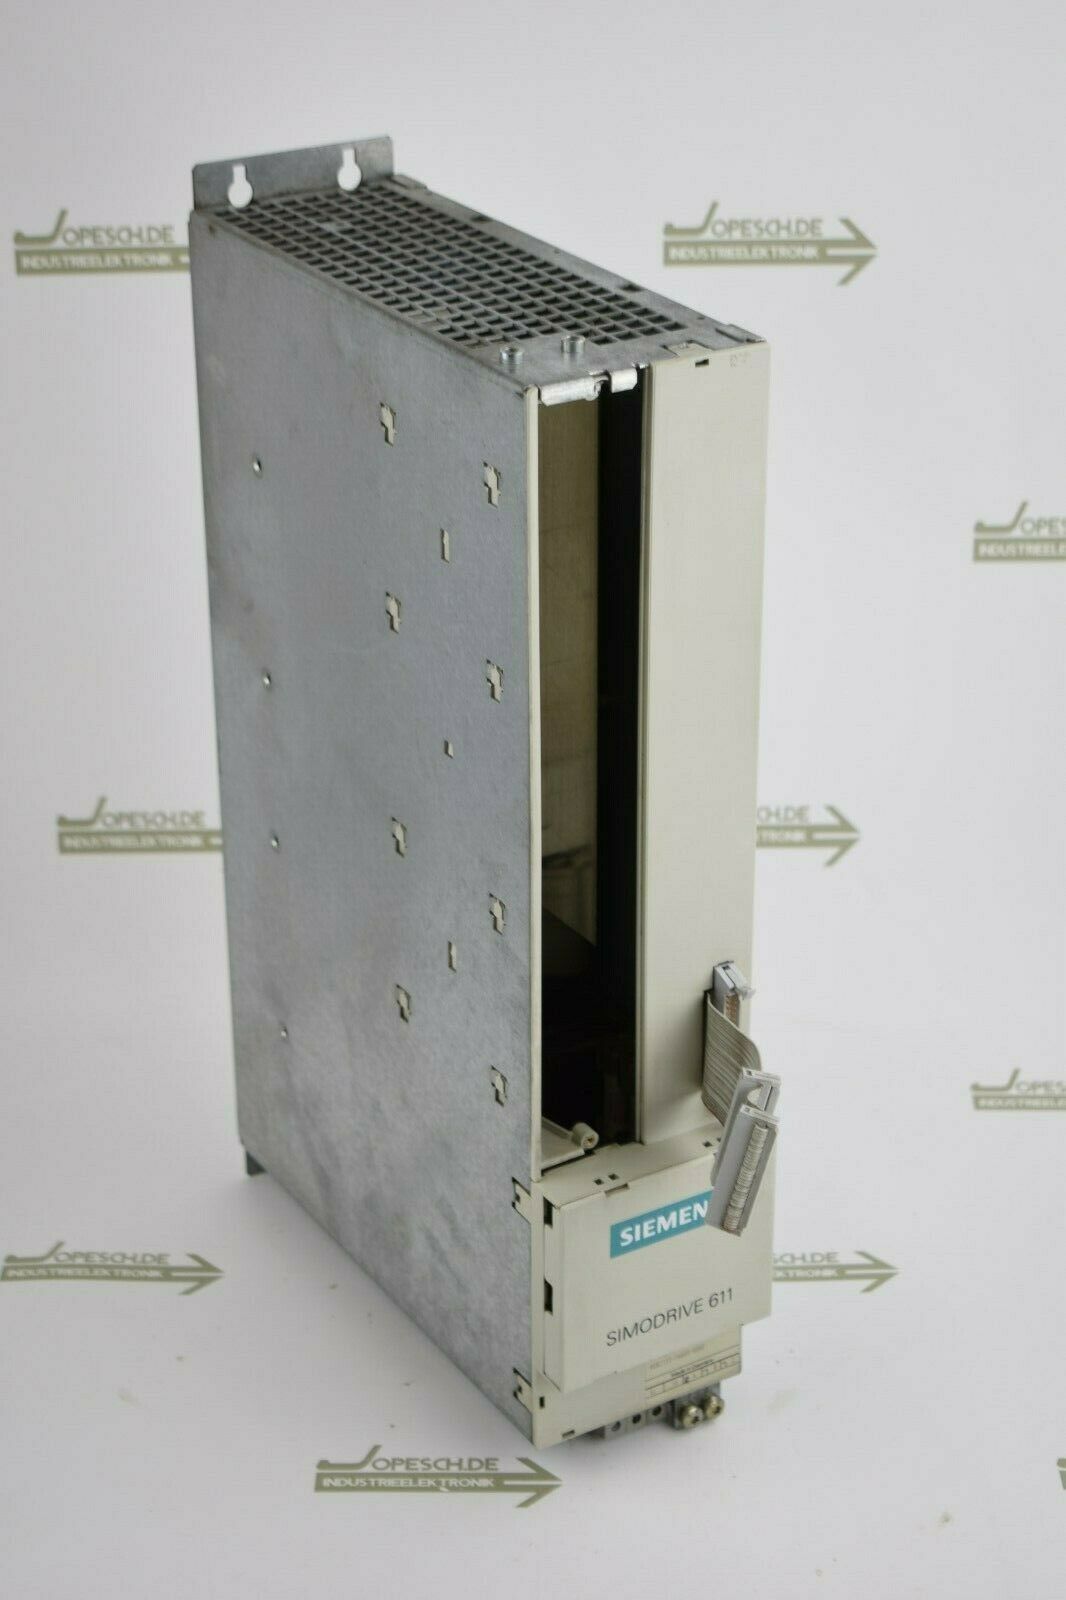 Siemens simodrive LT-Modul 6SN1 123-1AA00-0DA0 ( 6SN1123-1AA00-0DA0 ) V.A